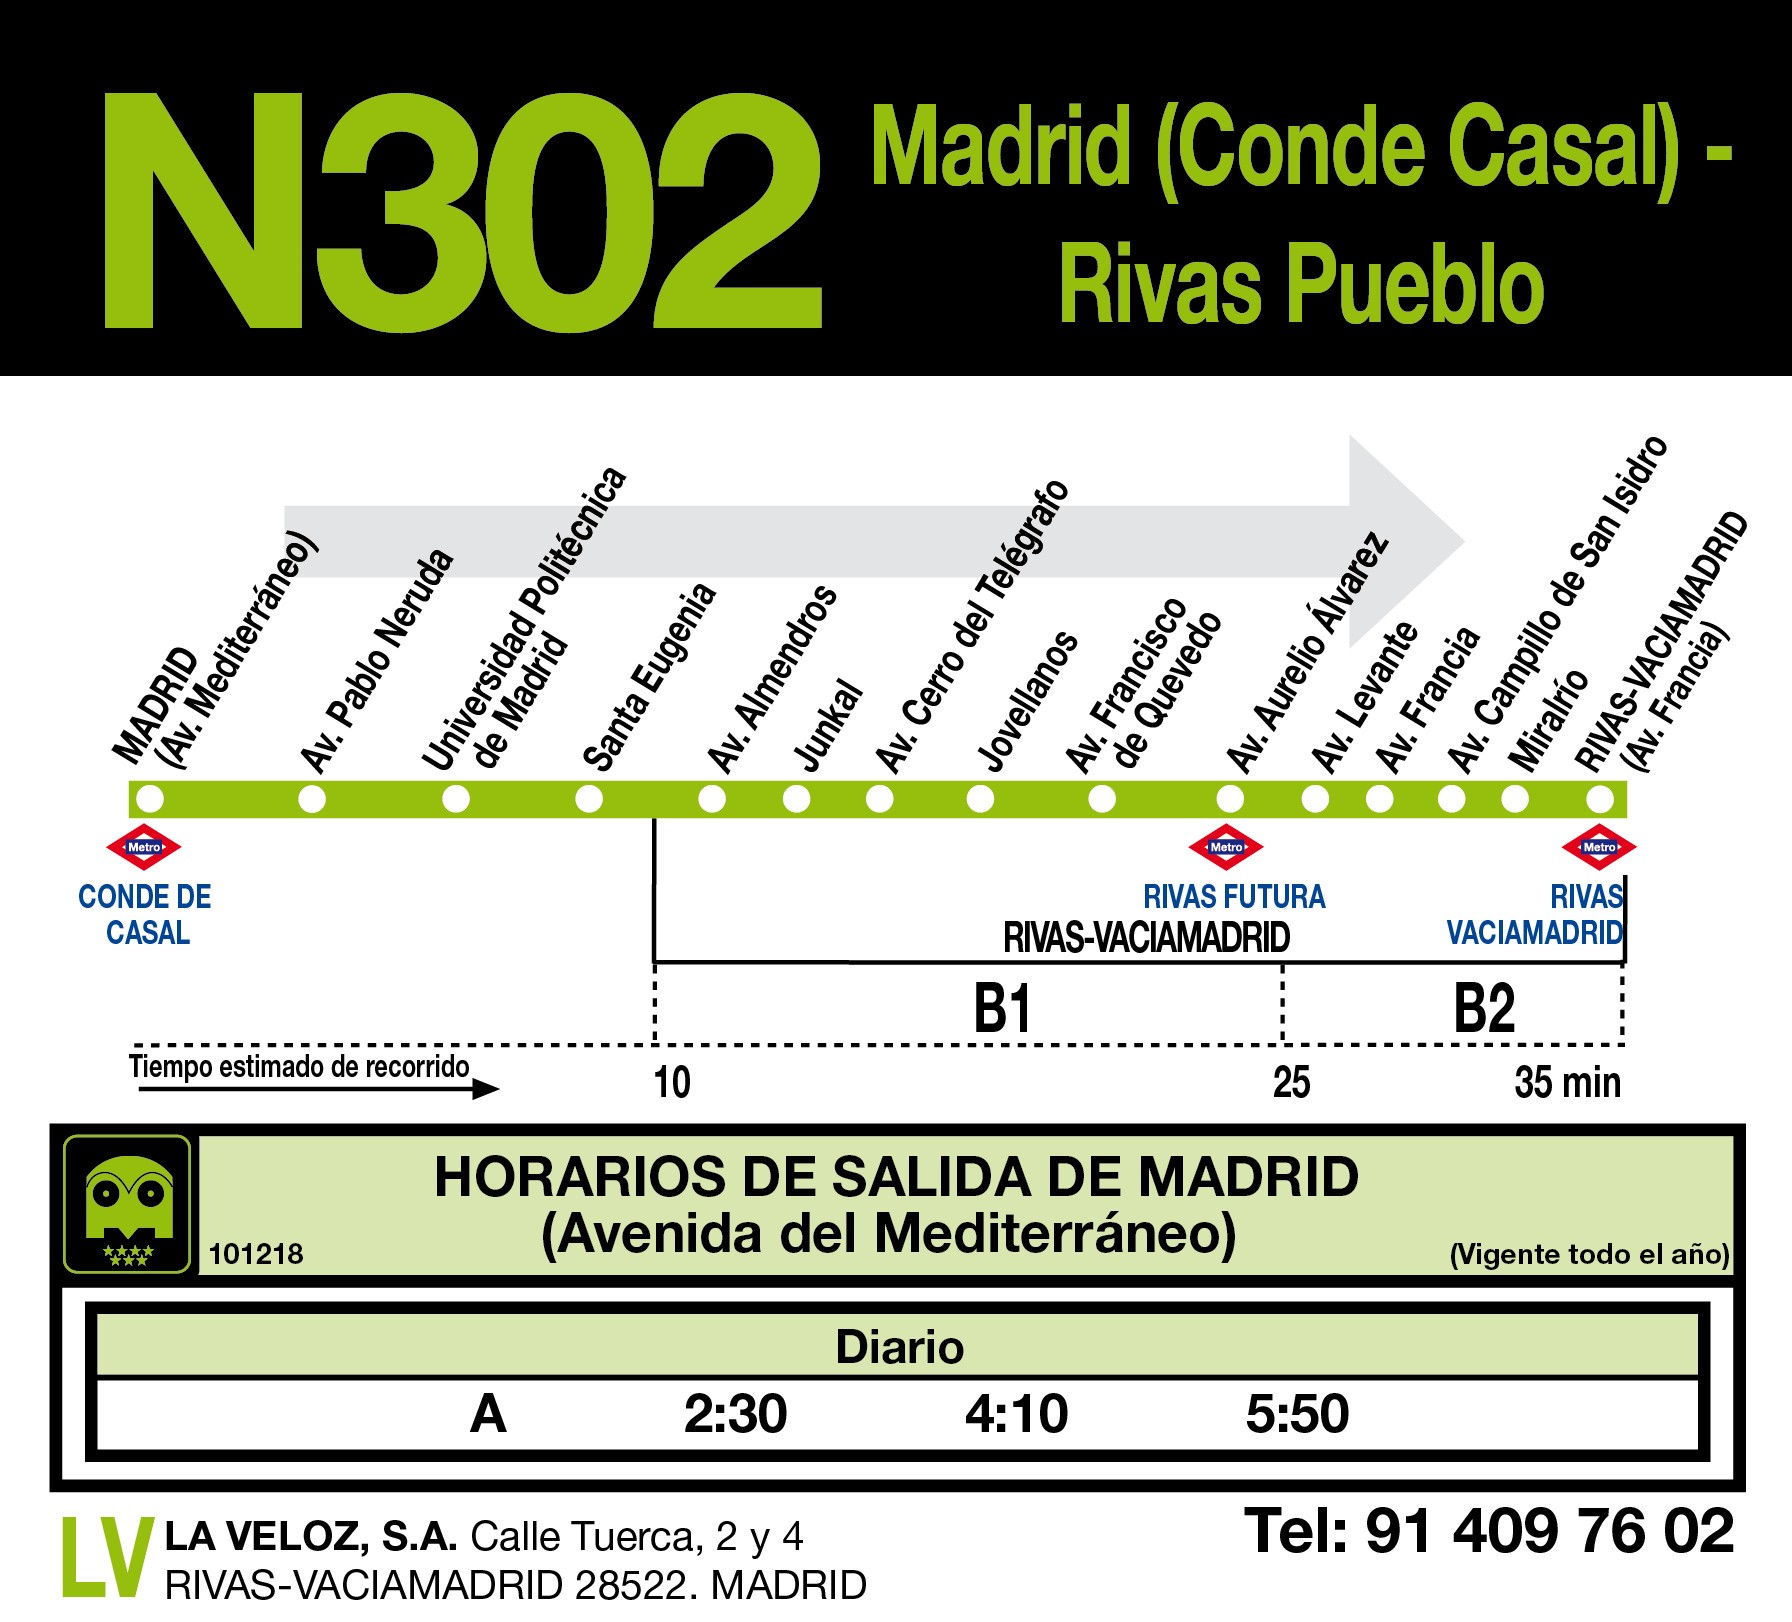 Madrid (C.Casal) - Rivas Pueblo